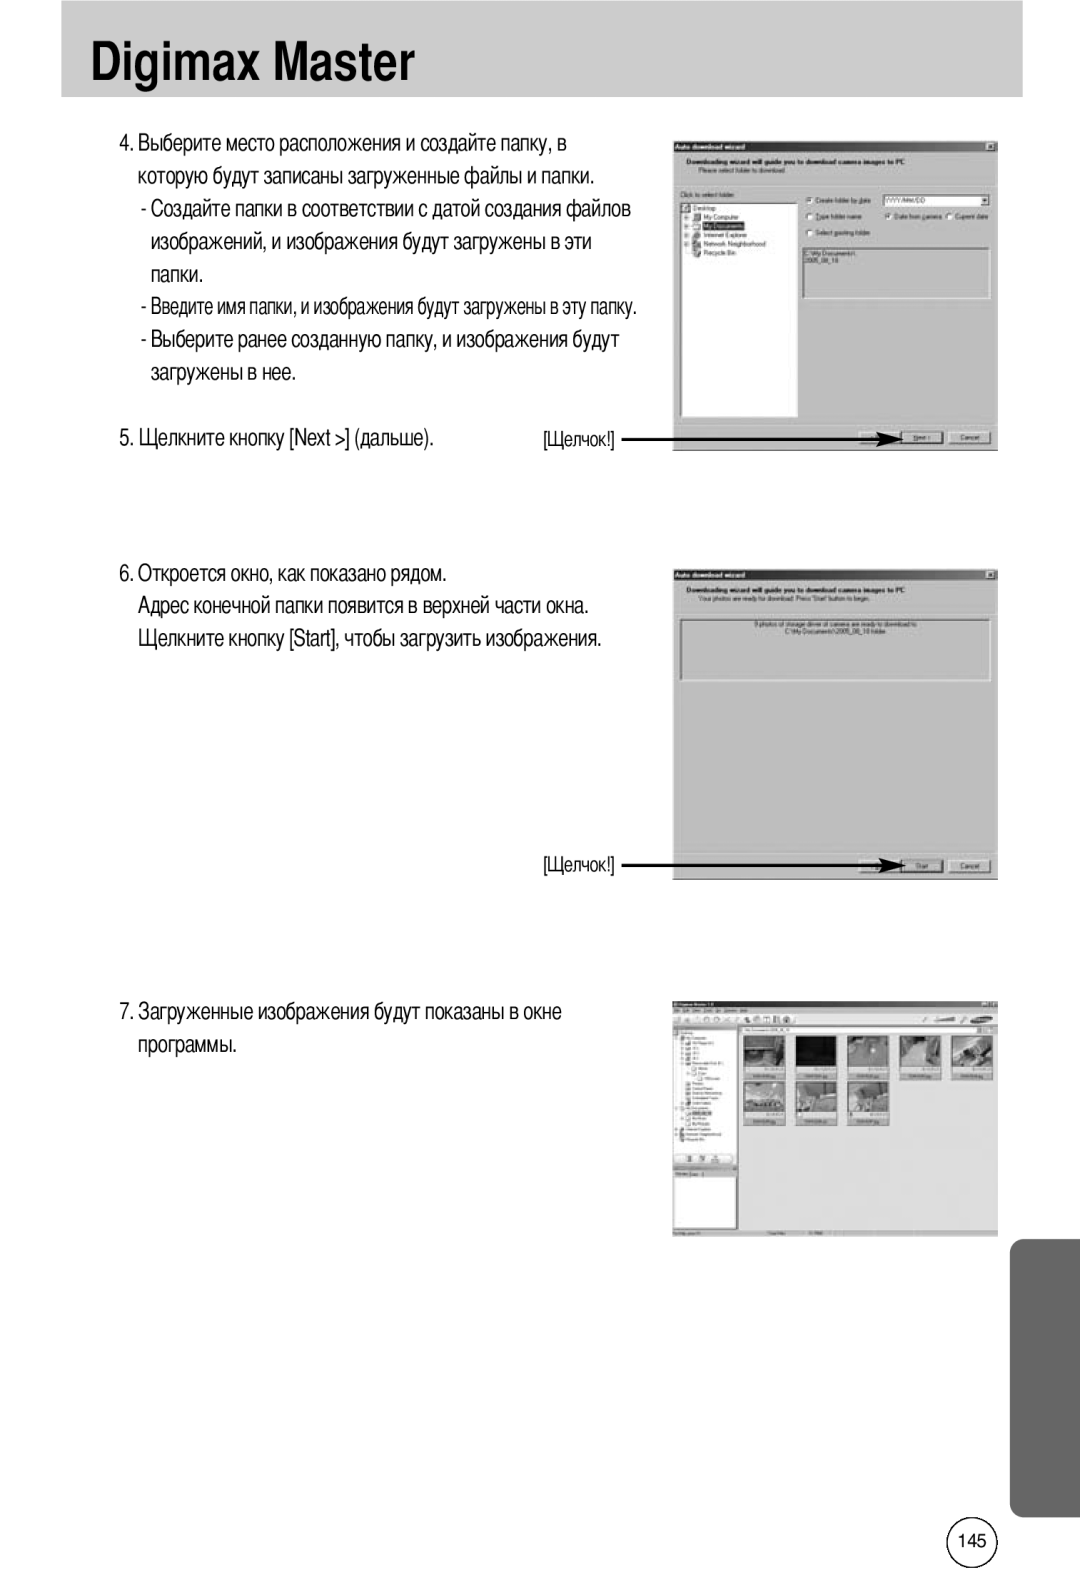 Samsung EC-I50ZZBBB/DE manual которую будут записаны загруженные файлы и папки, загружены в нее, программы, Digimax Master 